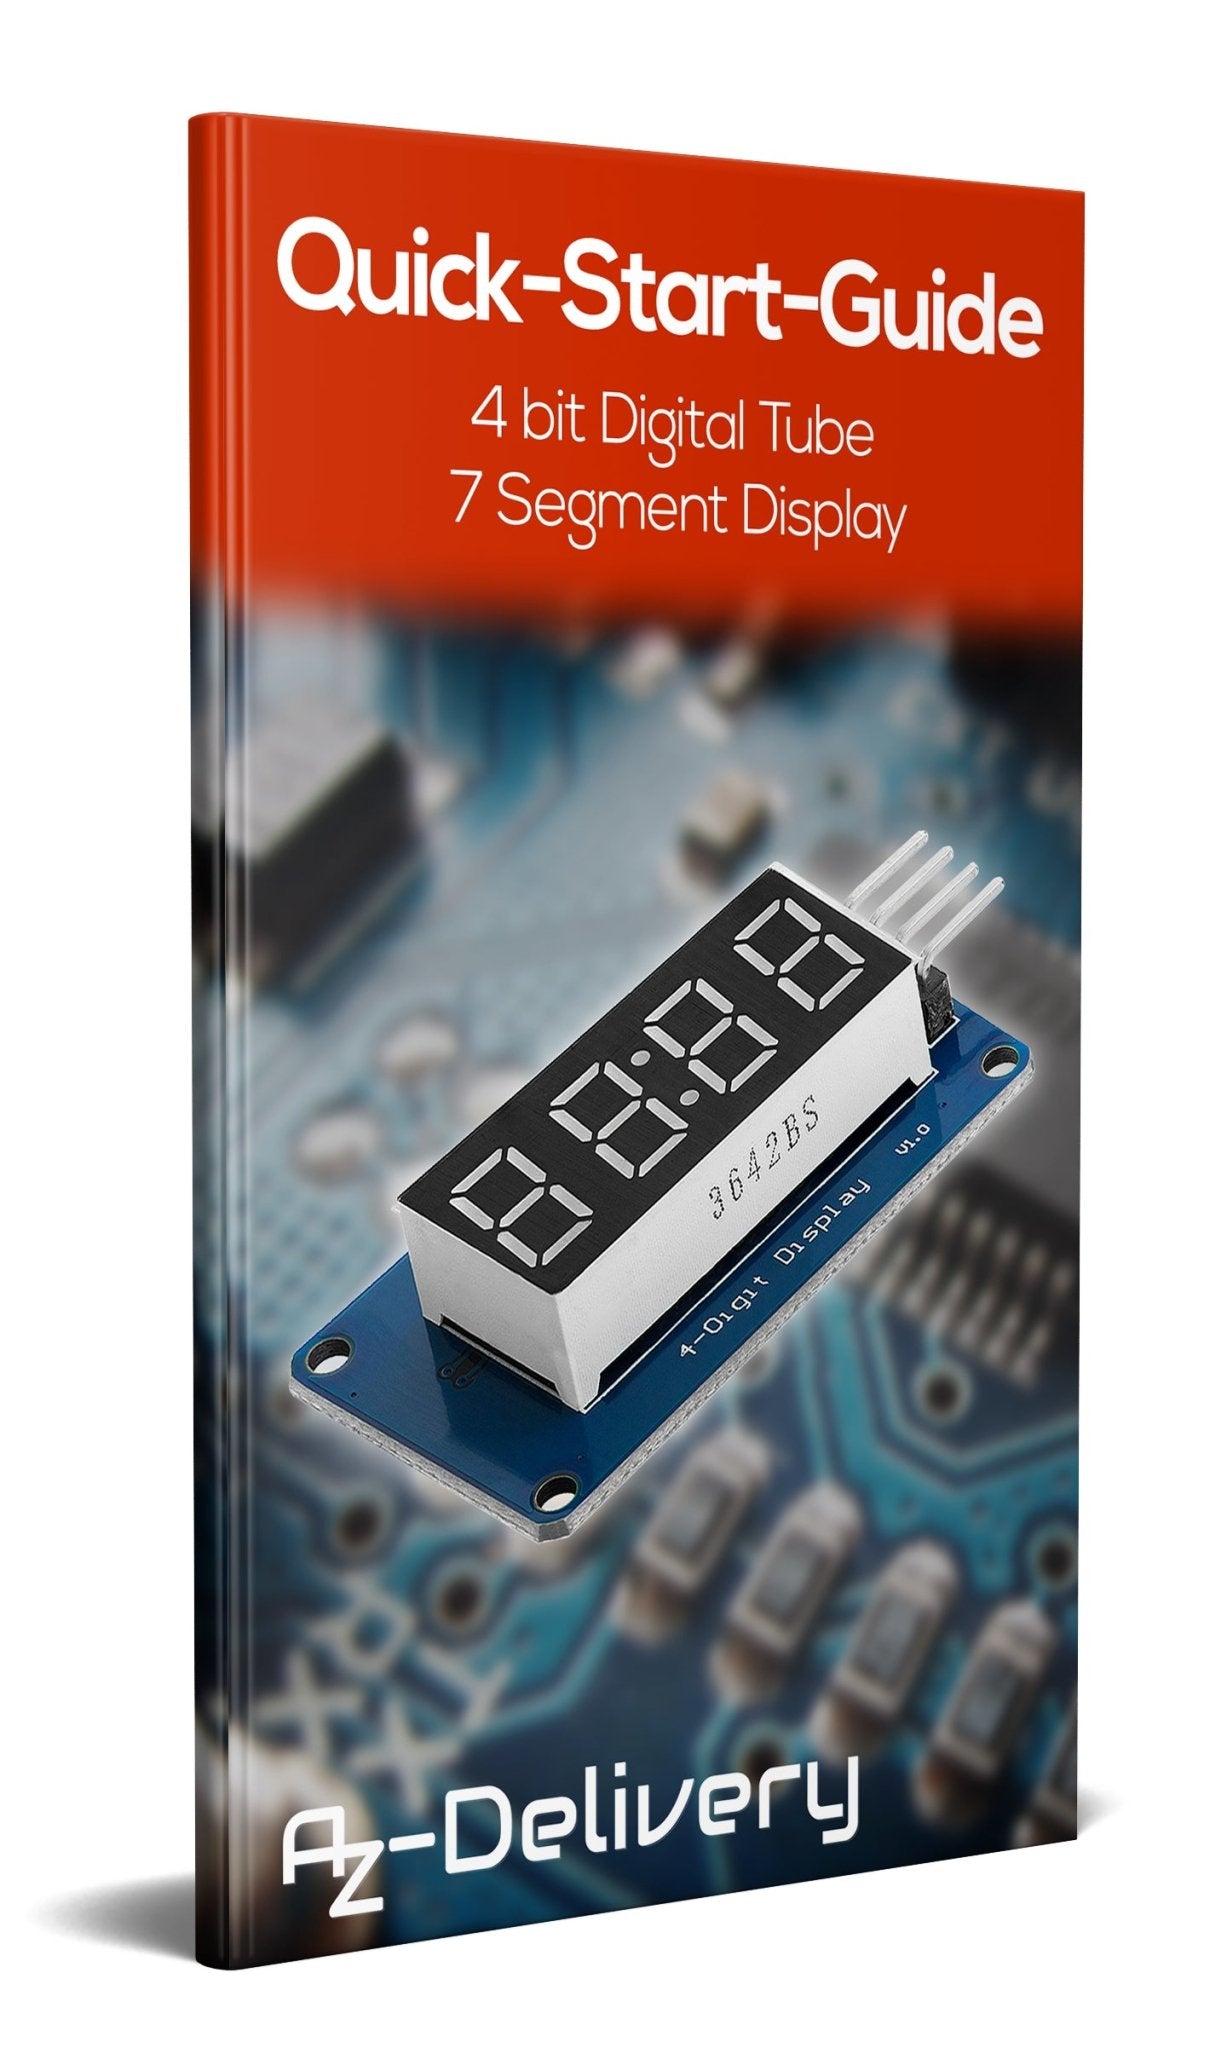 TM1637 4 Digit 7-Segment Display Modul kompatibel mit Arduino und Raspberry Pi - AZ-Delivery